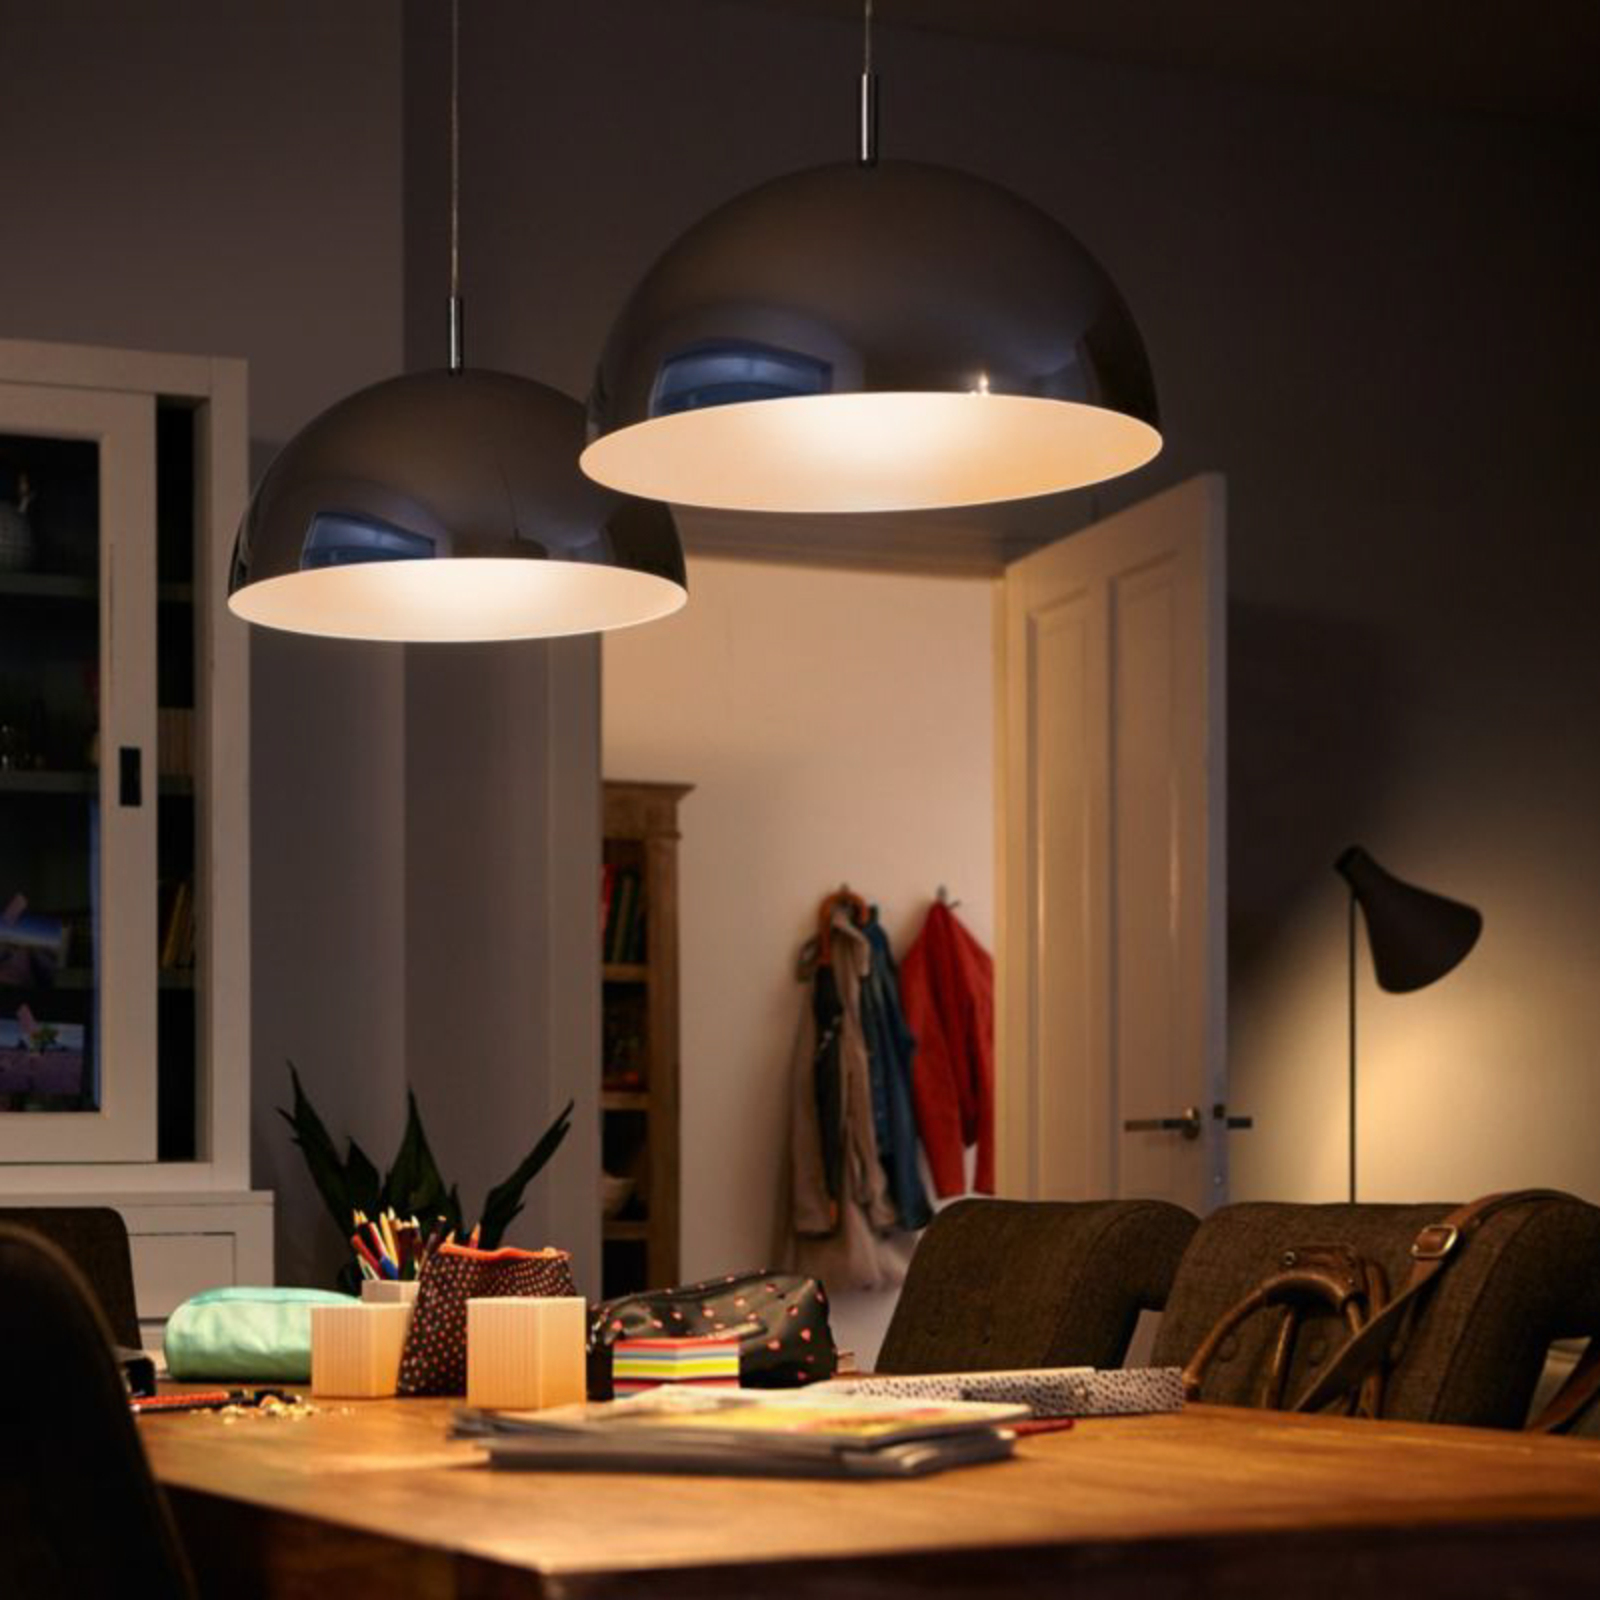 Philips LED lamp E27 4,9W 470lm 2.700K mat per 3